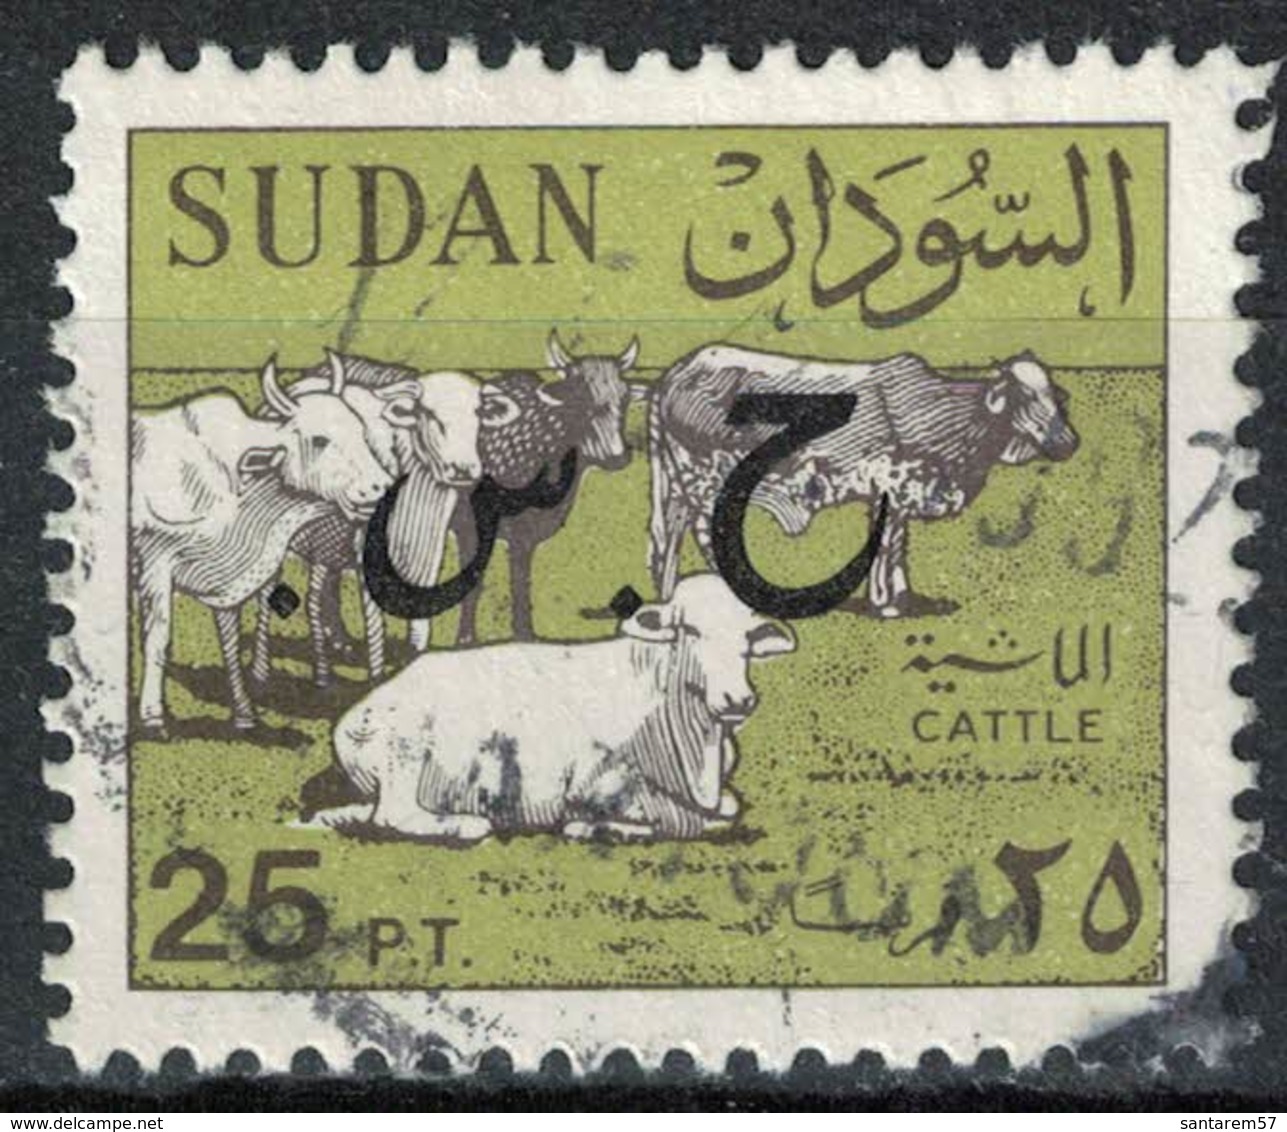 Soudan 1991 Oblitéré Used Cows Cattle Vaches Bétail Surchargé - Soudan (1954-...)